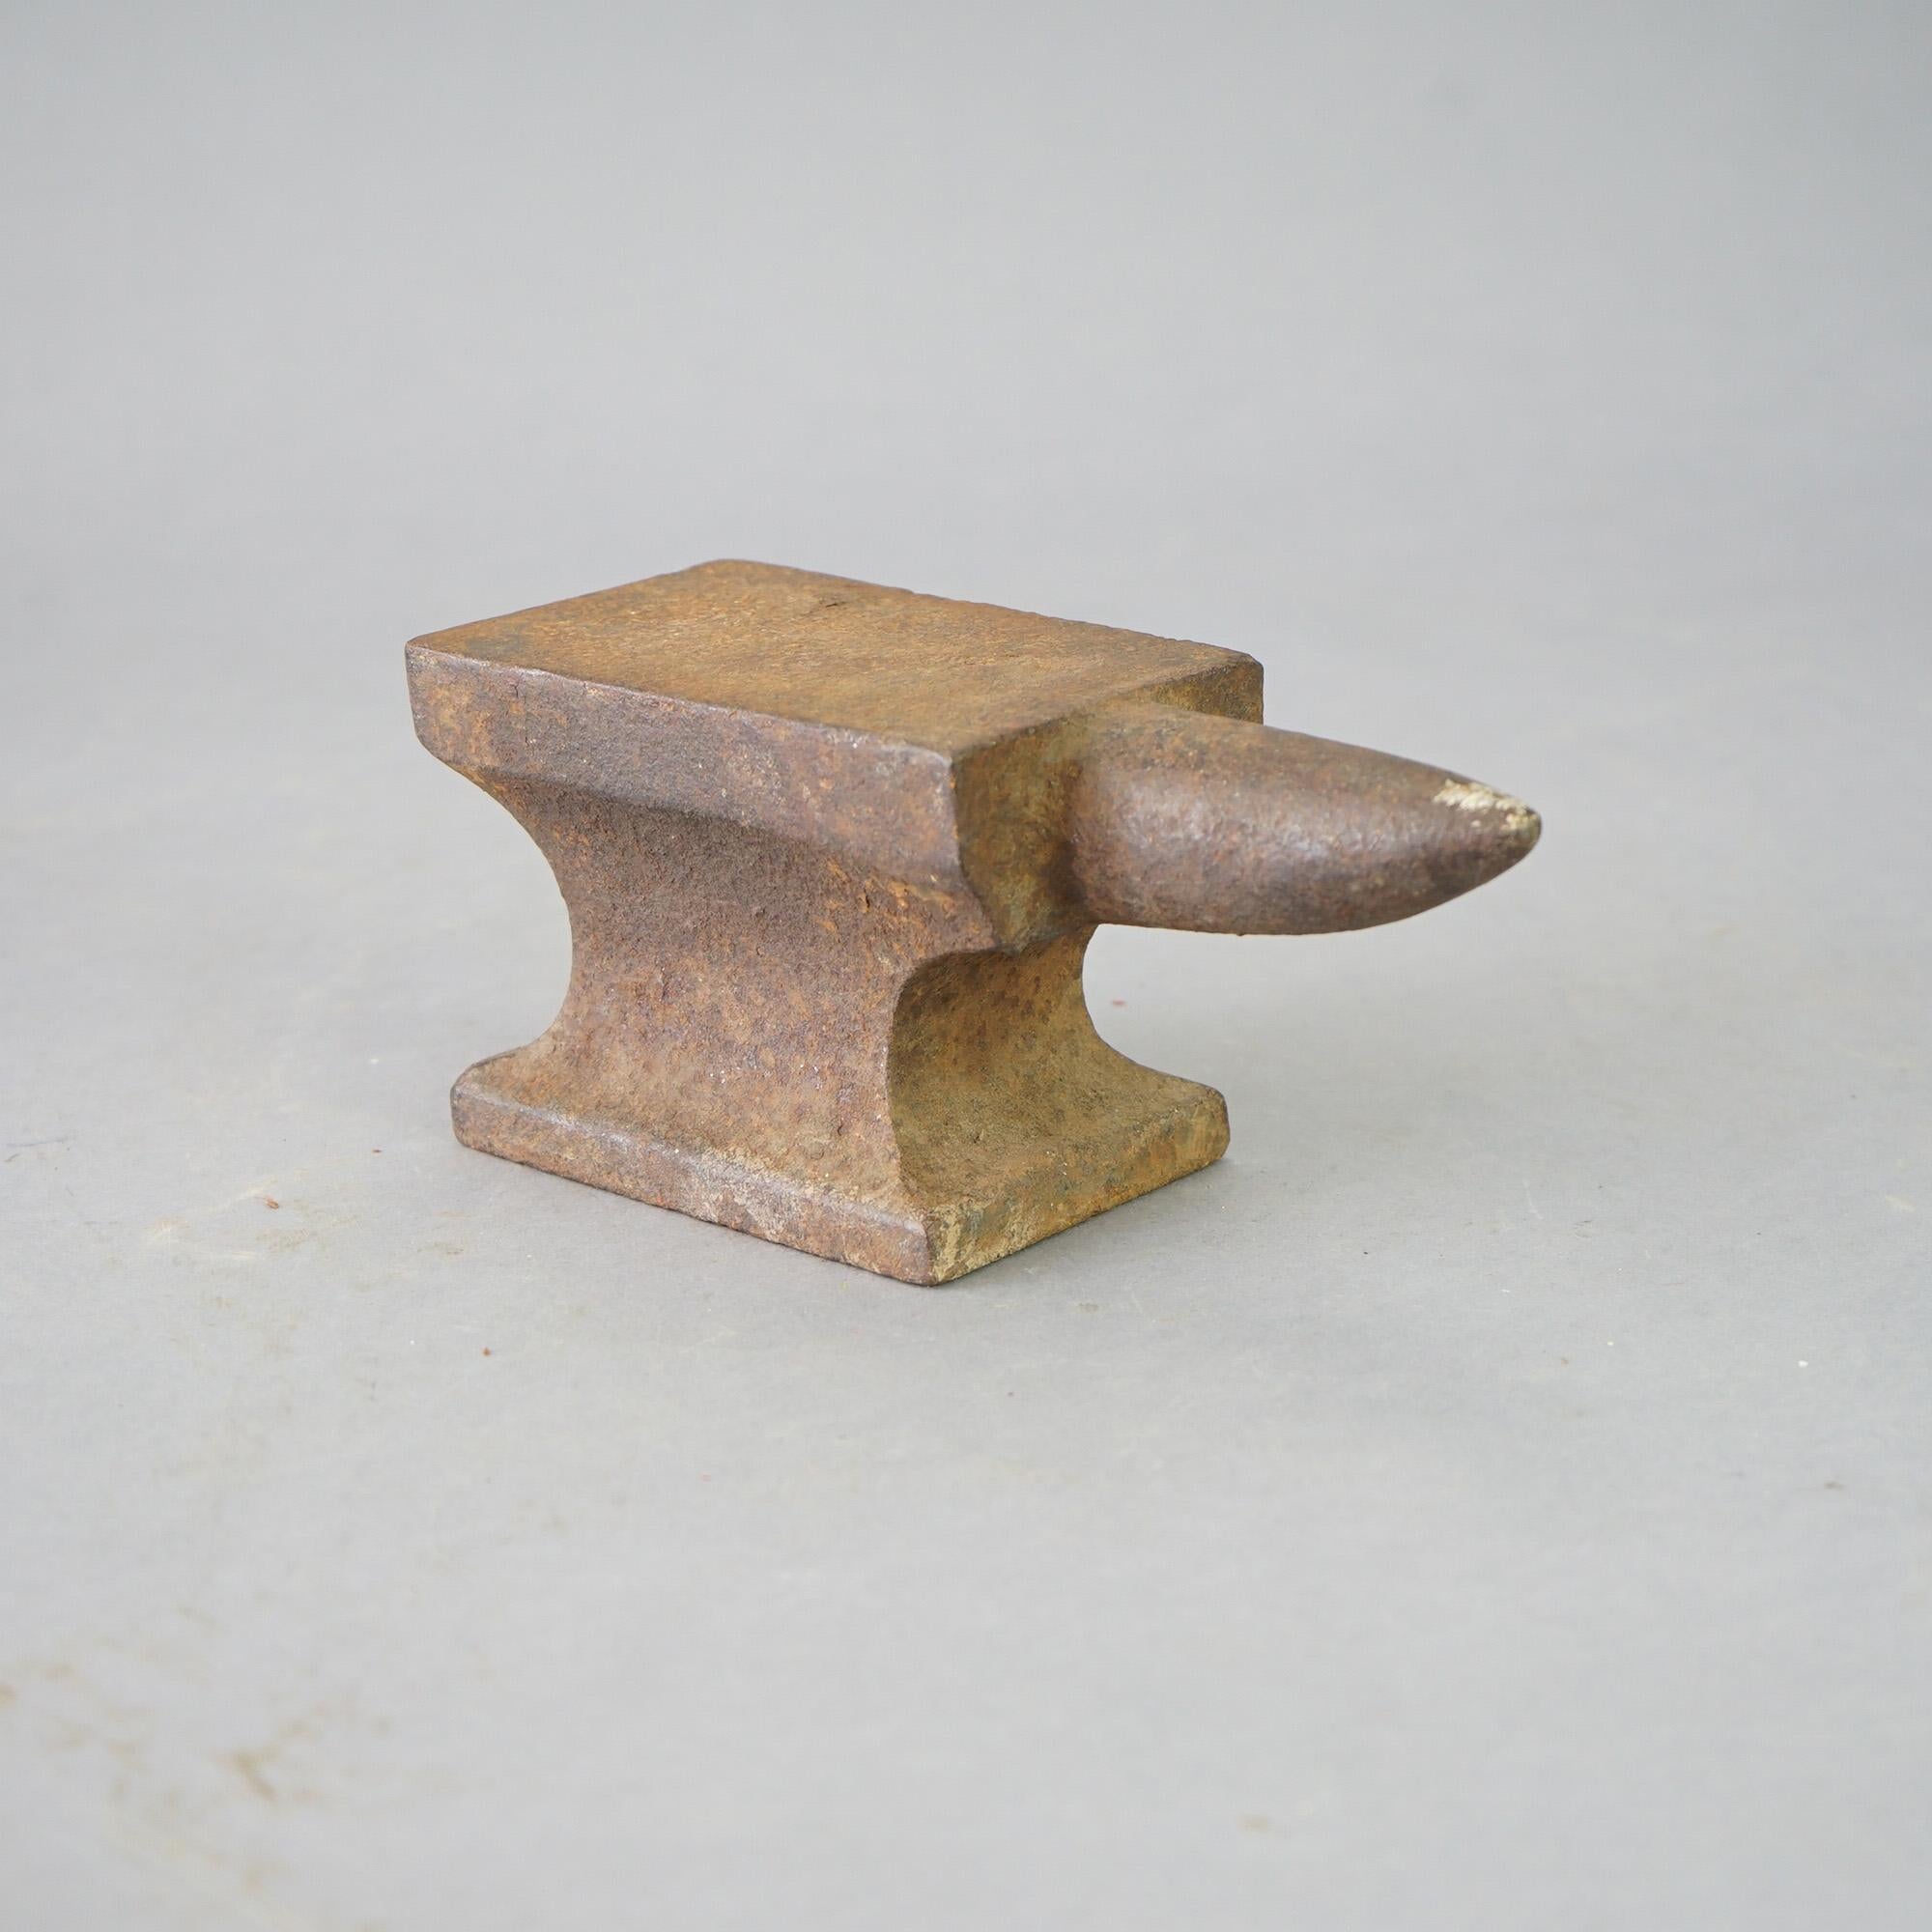 Antique & Miniature Salesman Sample Cast Iron Anvil 19th C

Measures- 4''H x 3.5''W x 9.5'' long